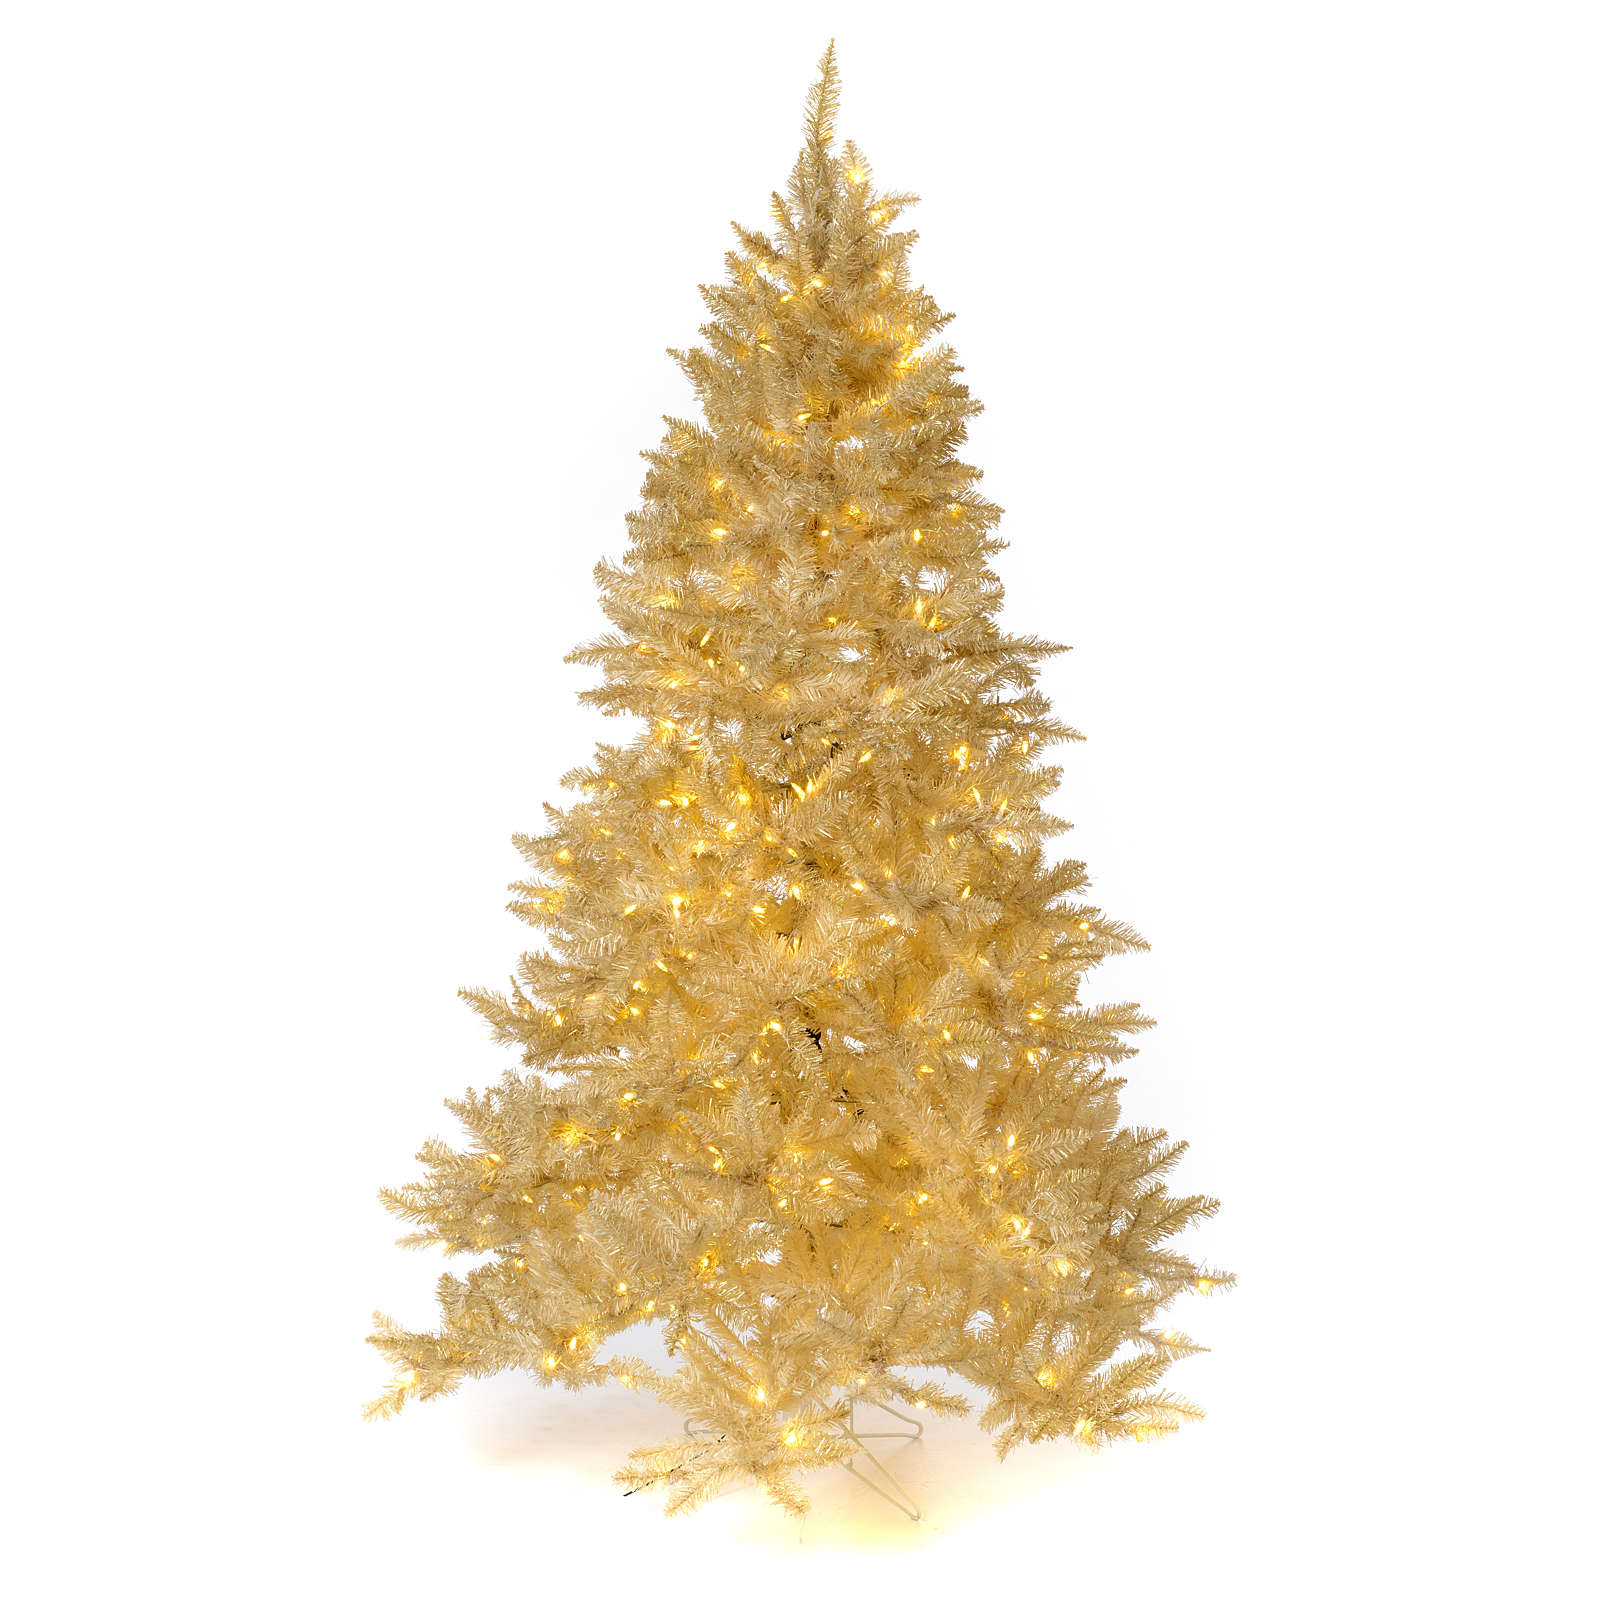 Luci Albero Natale.Albero Di Natale 340 Cm Avorio 1600 Luci Led Glitter Oro Ebay